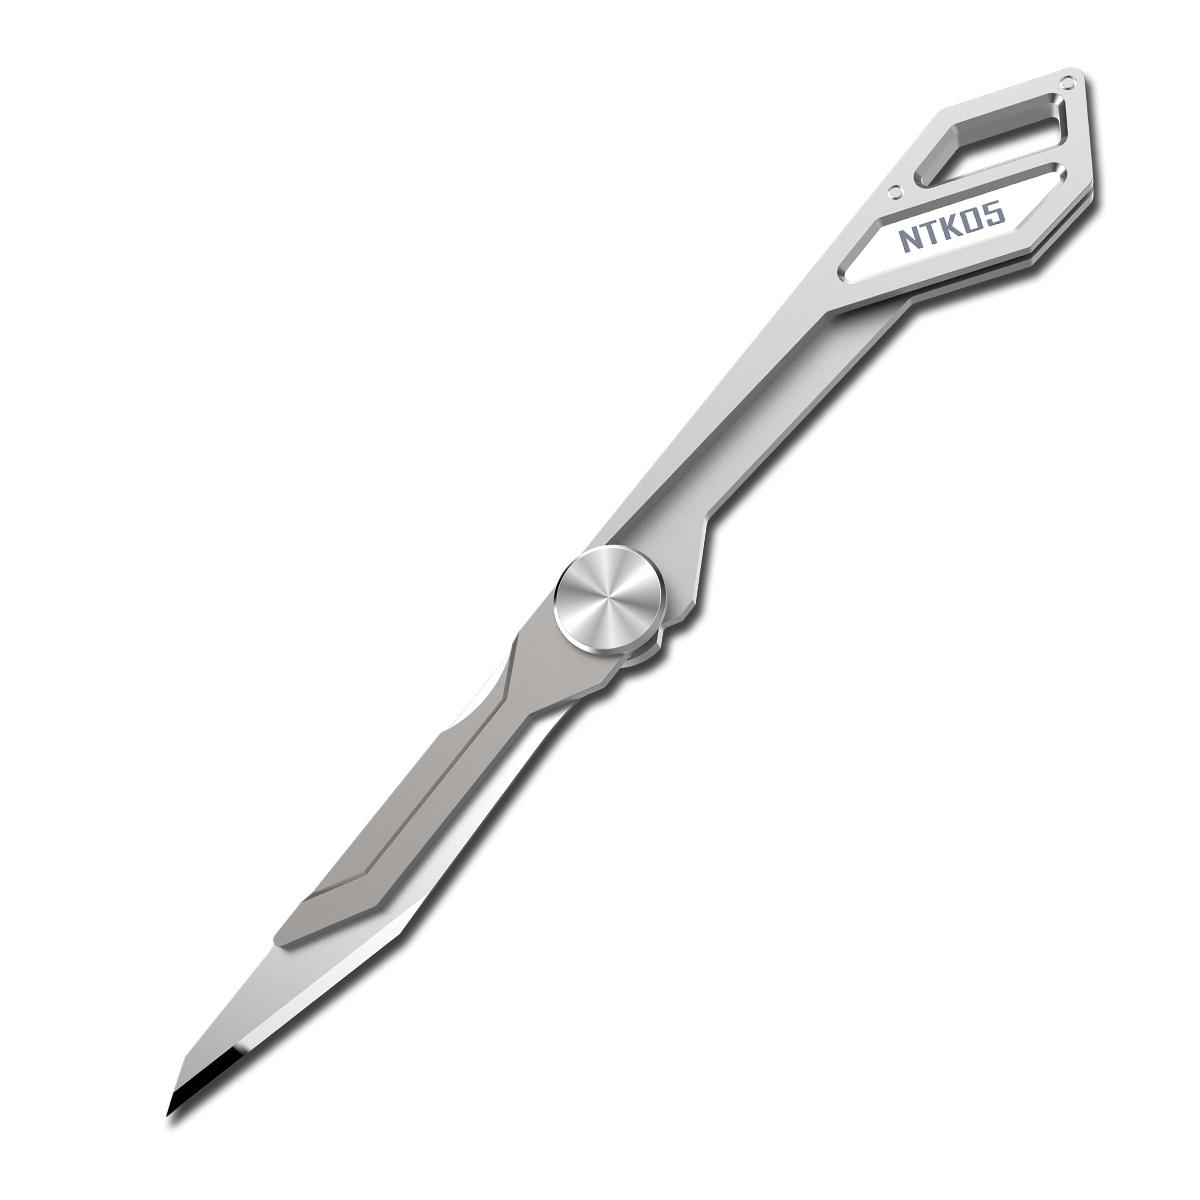 Opvouwbaar mes NITECORE NTKO5 van ultralicht TC4-titaniumlegering, met een opvouwbaar mes van 97 mm en een gewicht van 4,7 g, en een gesp voor aan de sleutelhanger.